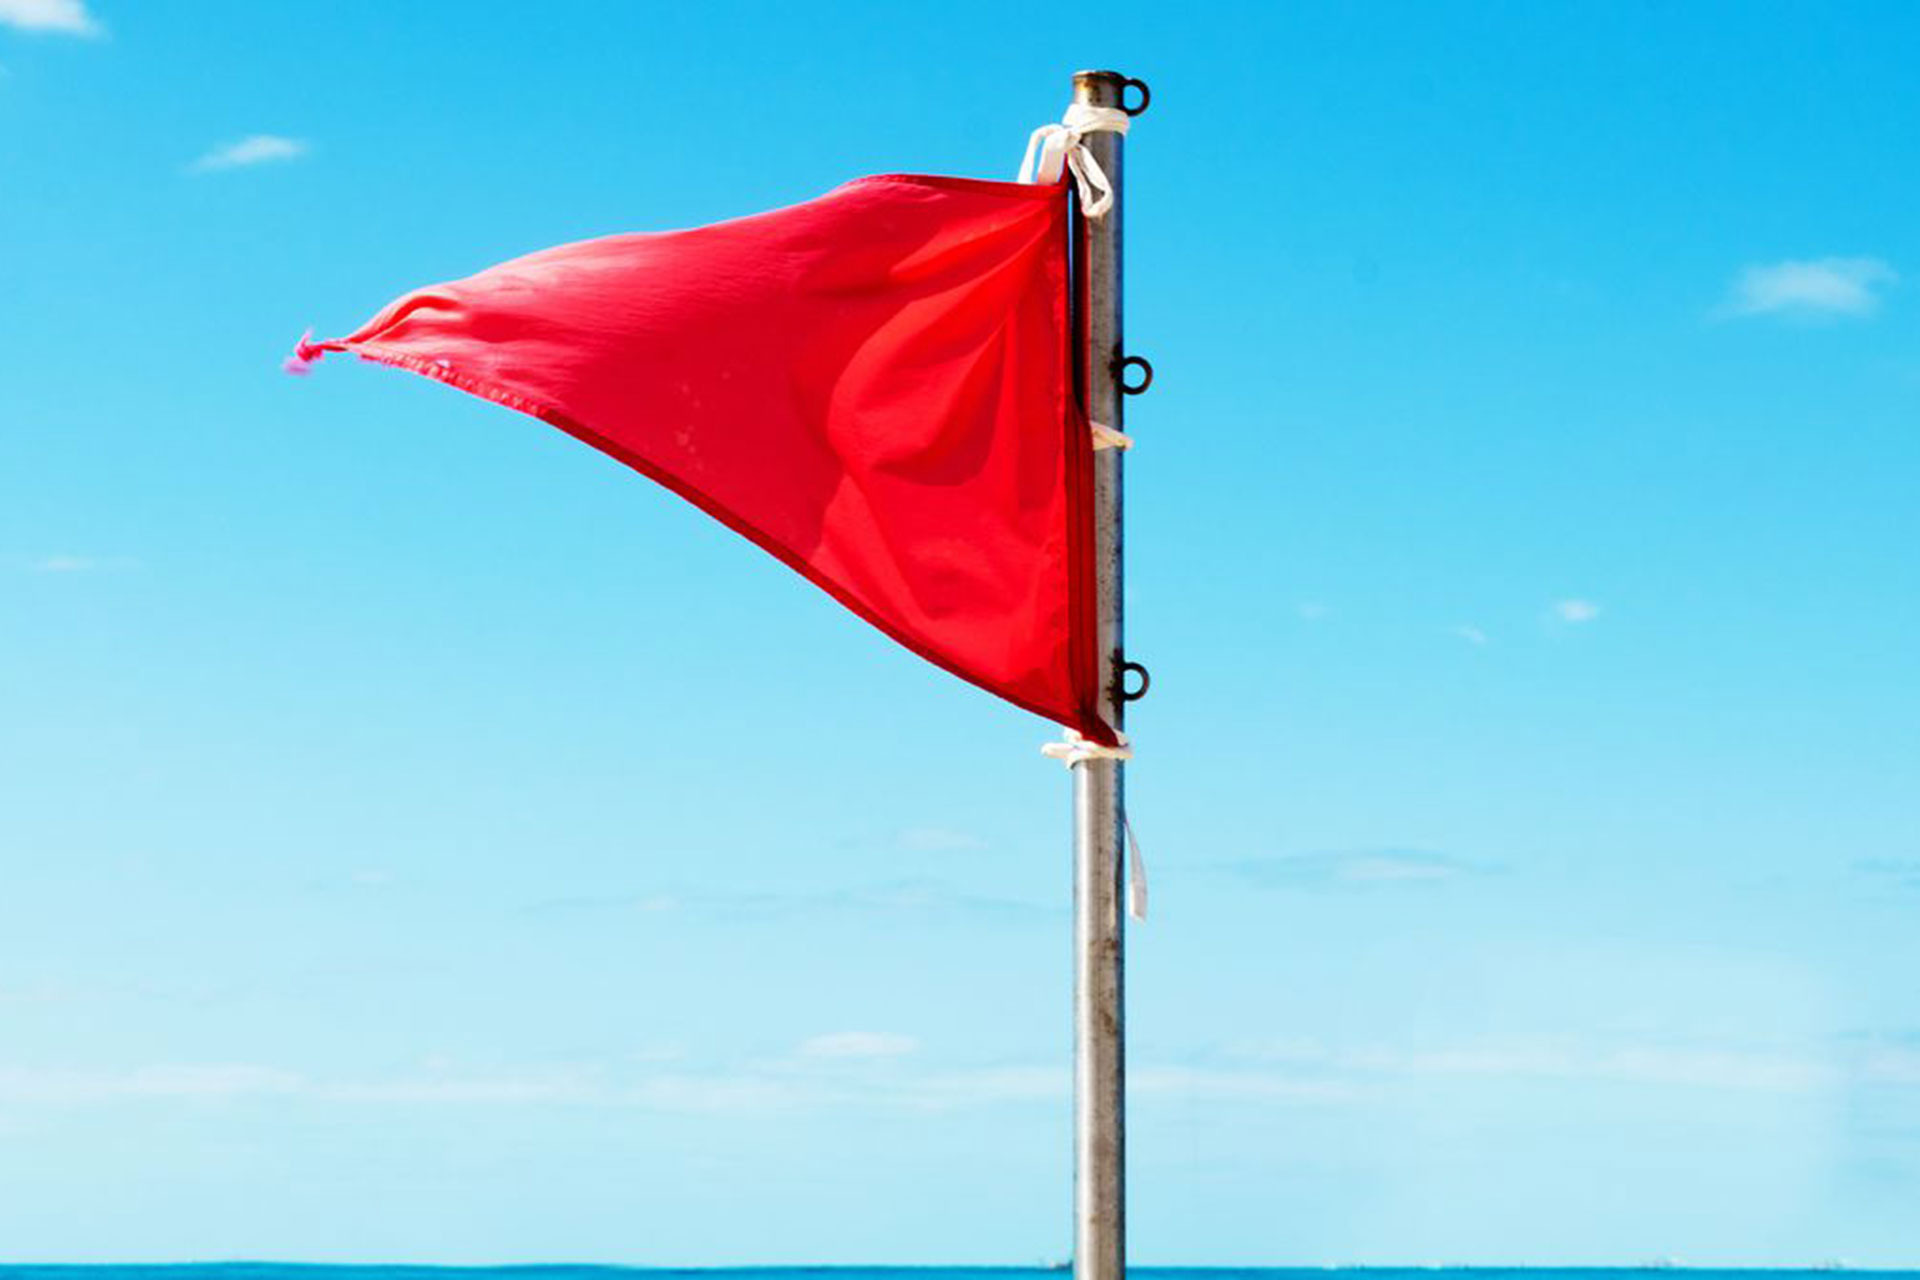 پرچم قرمز؛ ترندی جدید در توییتر برای هشدار در مورد افراد و روابط مختلف